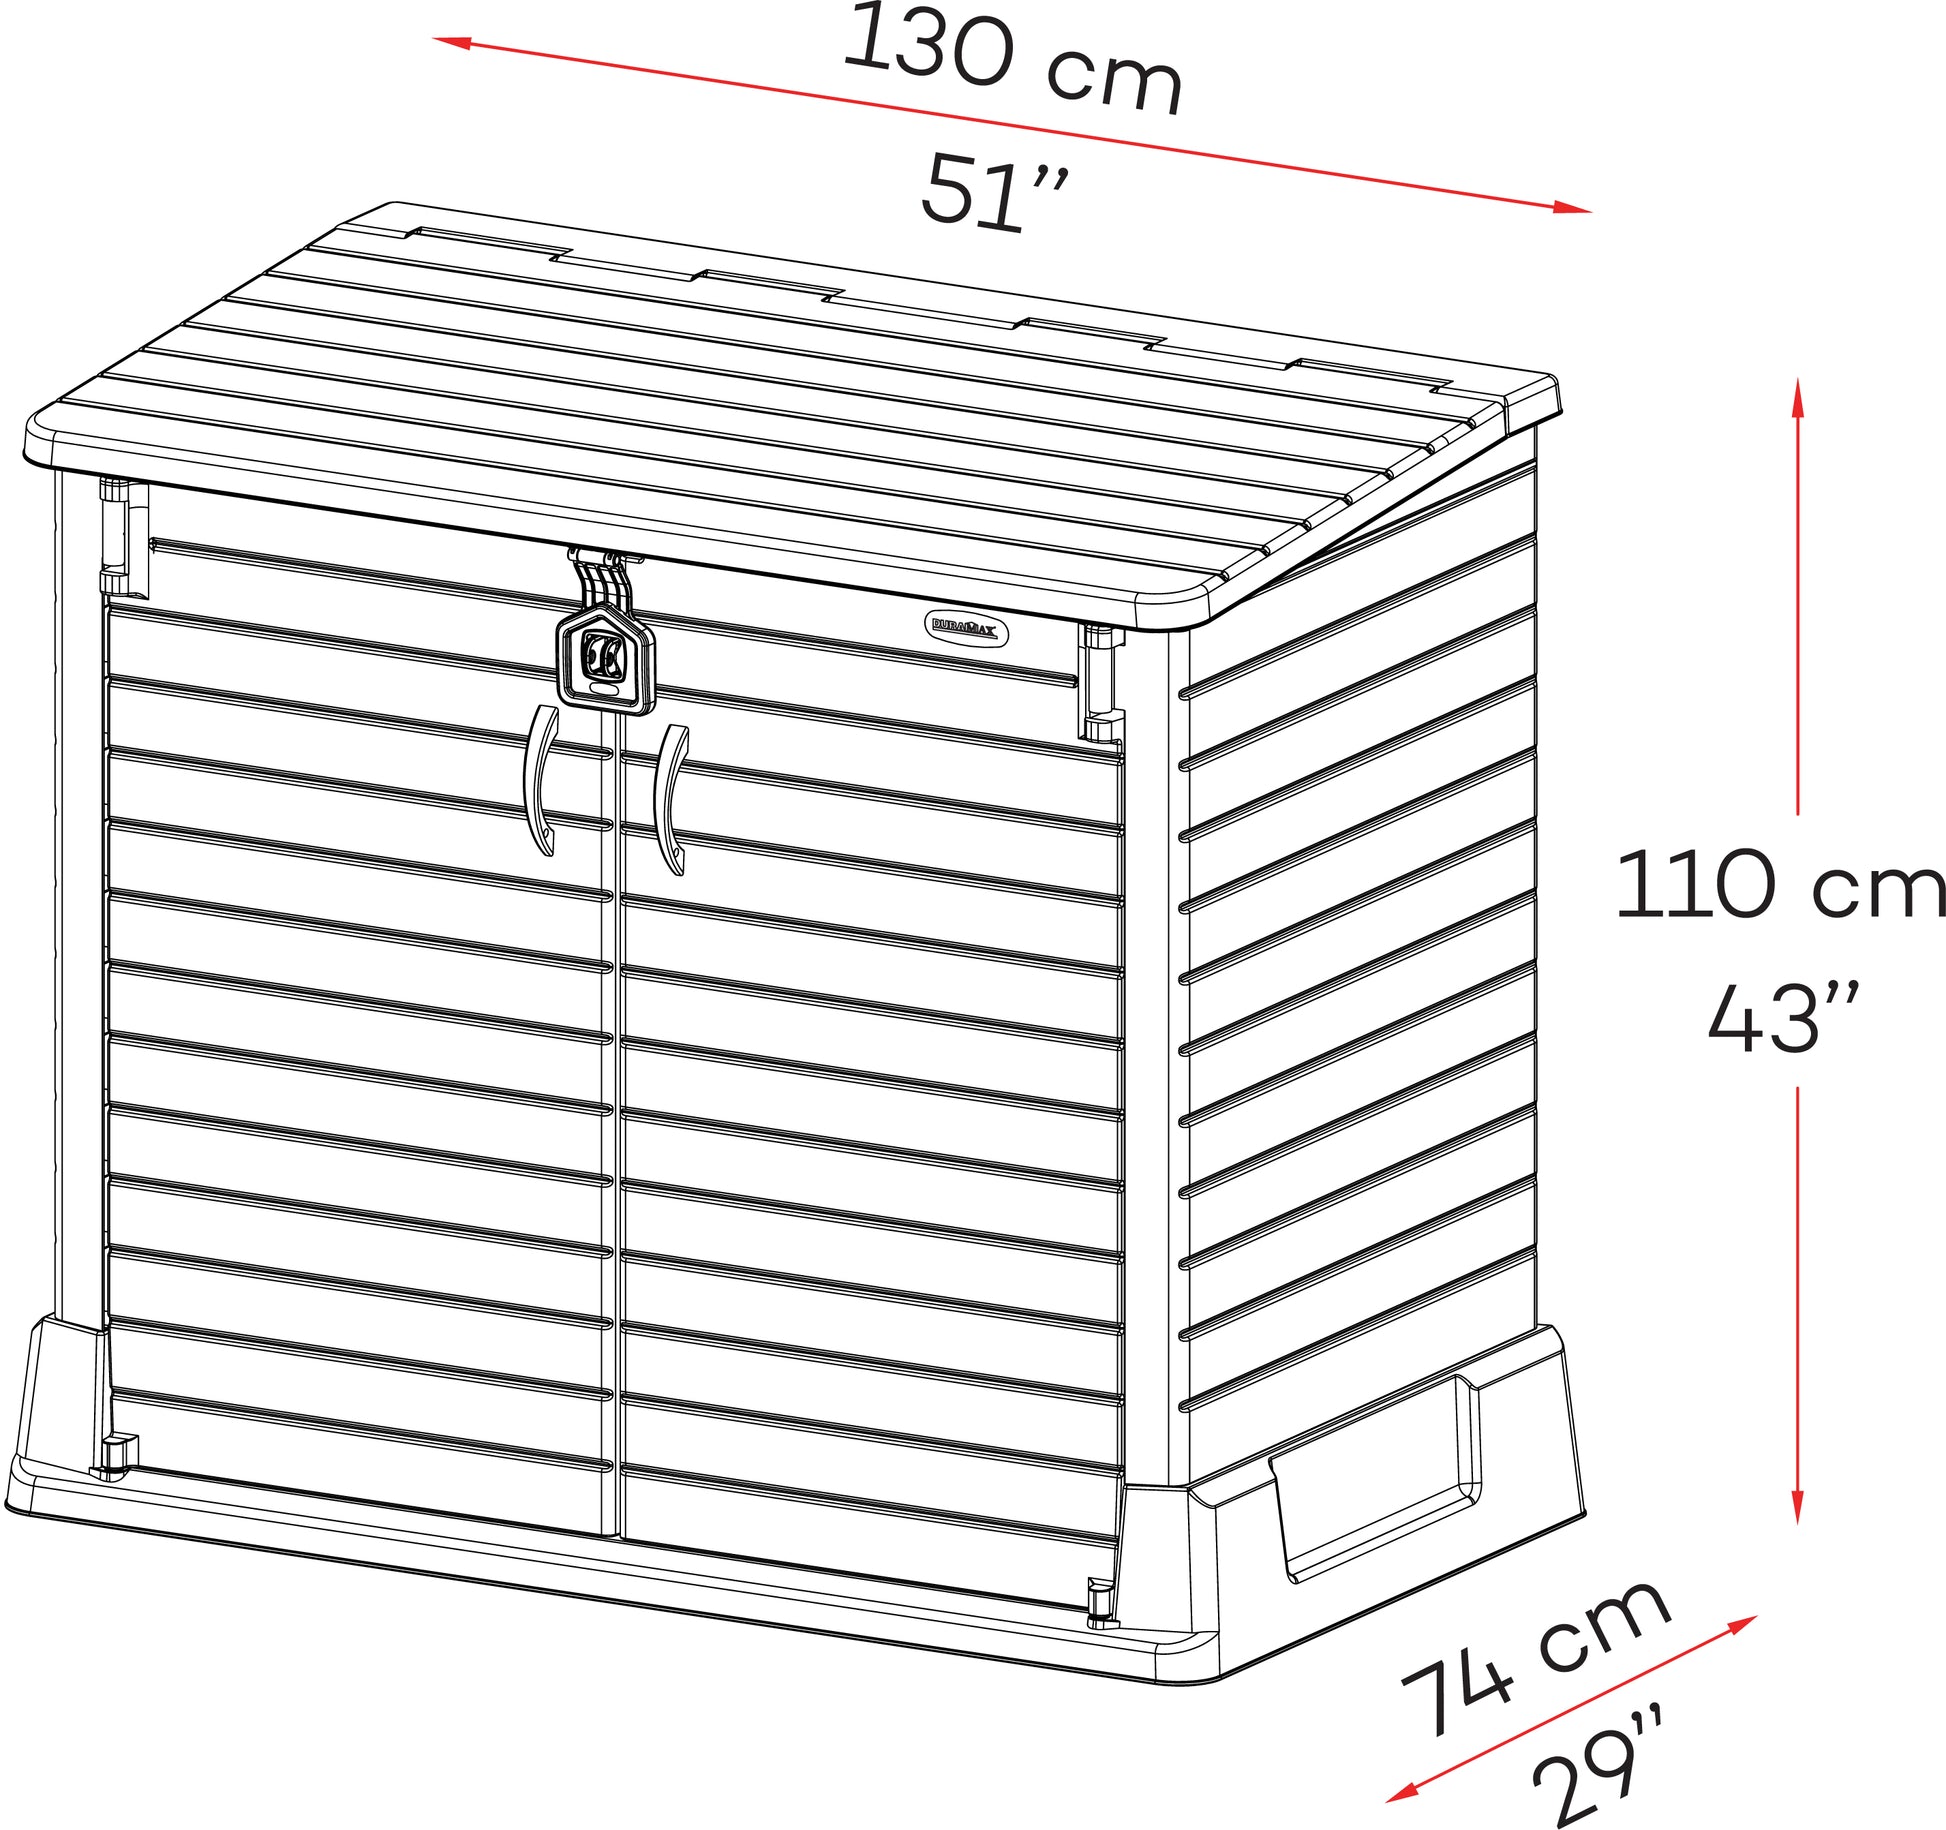 Duramax garden storage shed dimensions, 1.30 x 1.10.